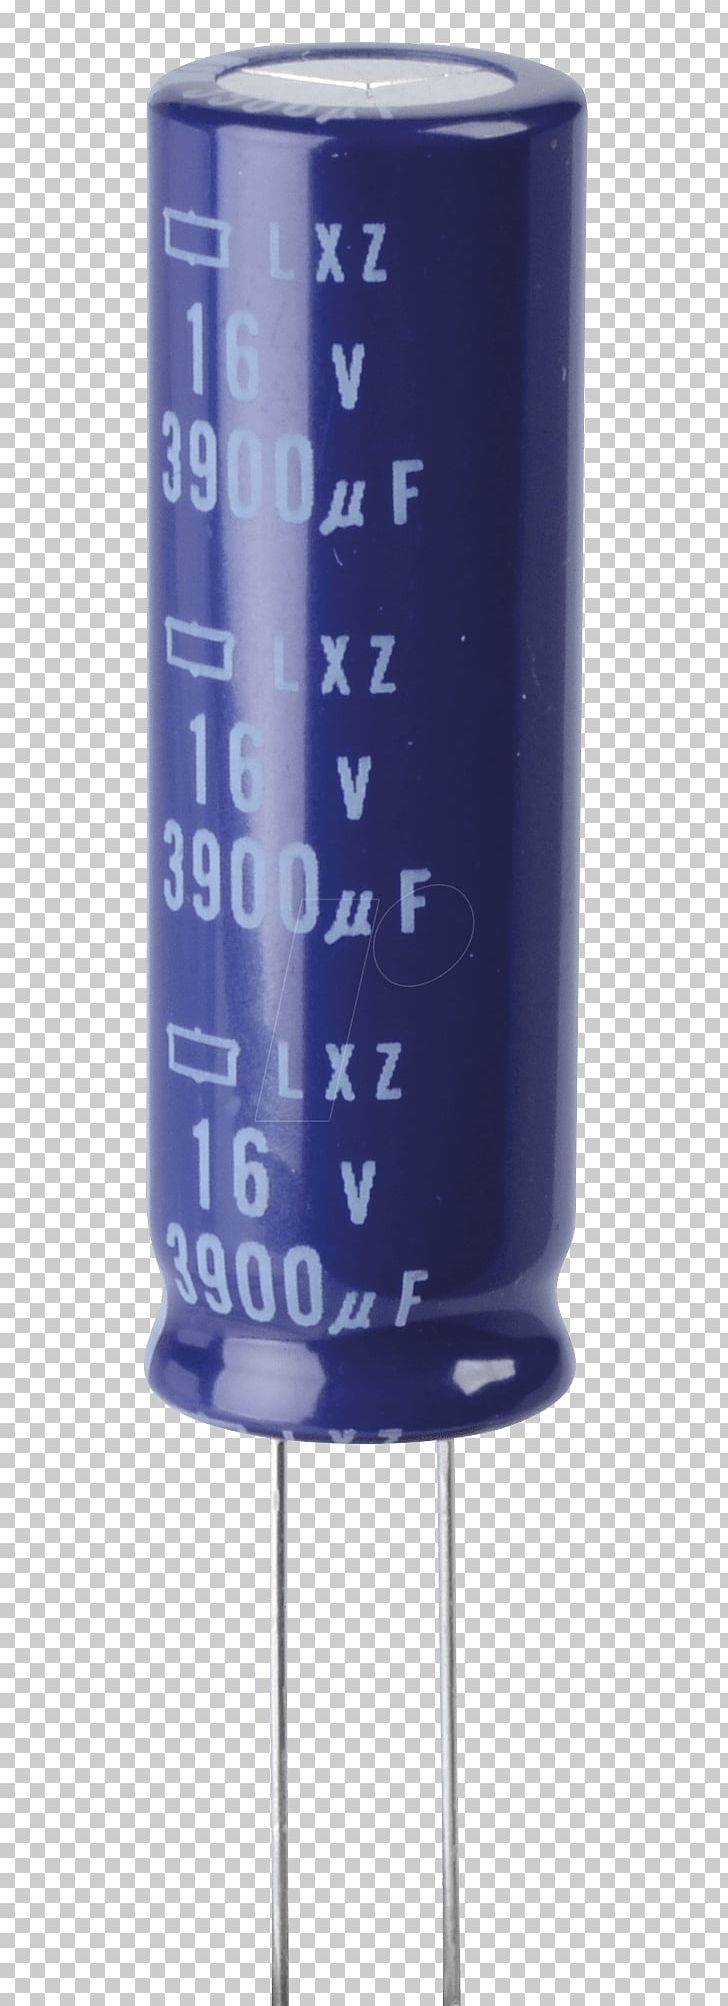 Capacitor Cobalt Blue PNG, Clipart, 3 K, 16 V, Art, Blue, Capacitor Free PNG Download